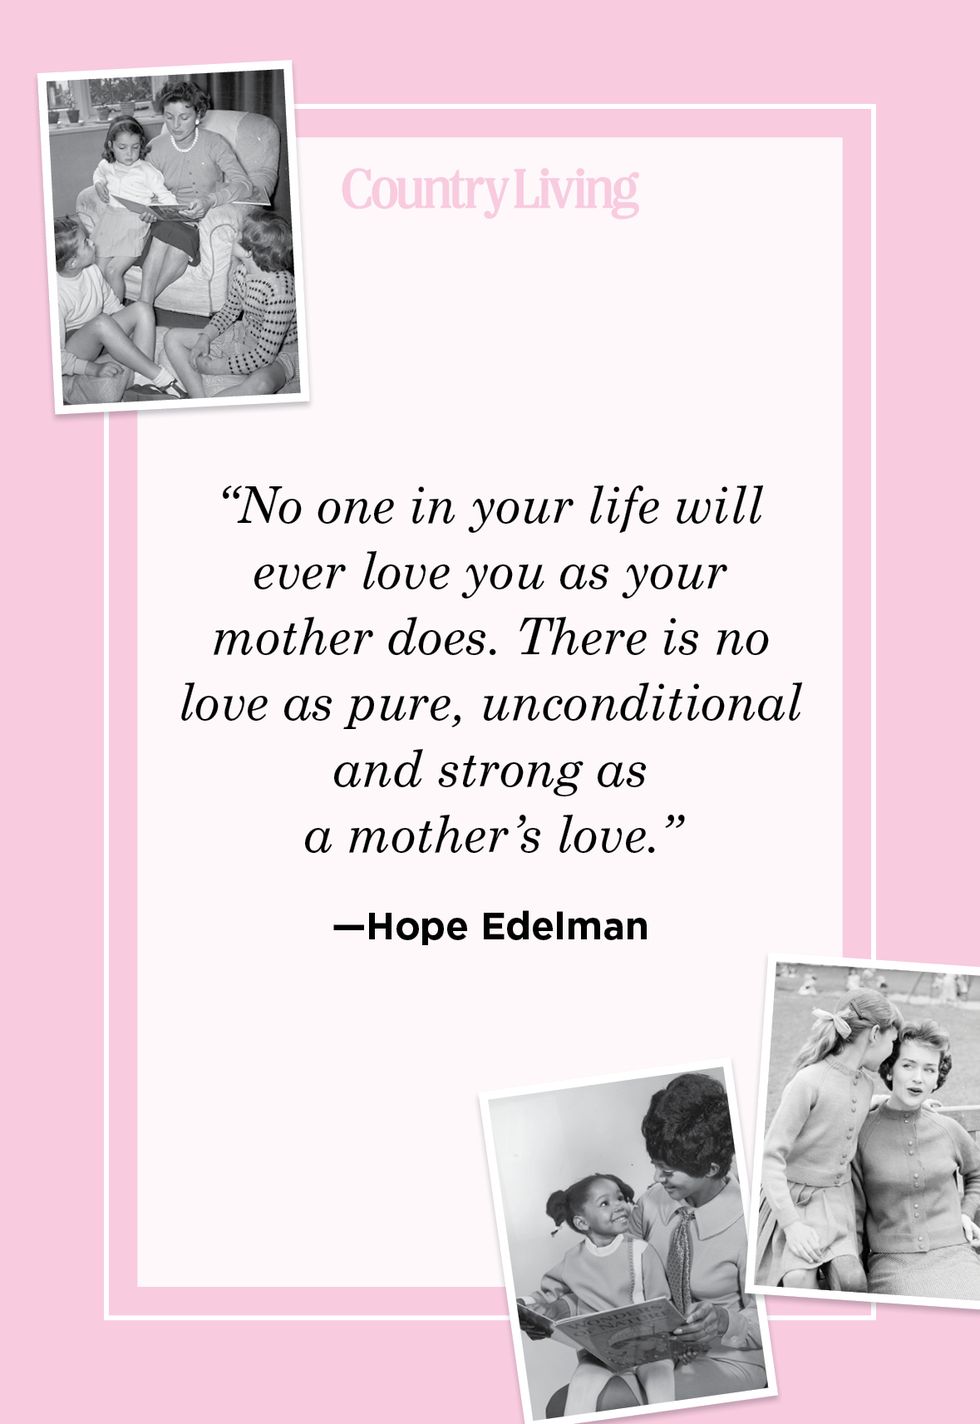 Mother's Day Specials & Bundles - Nurturing Expressions